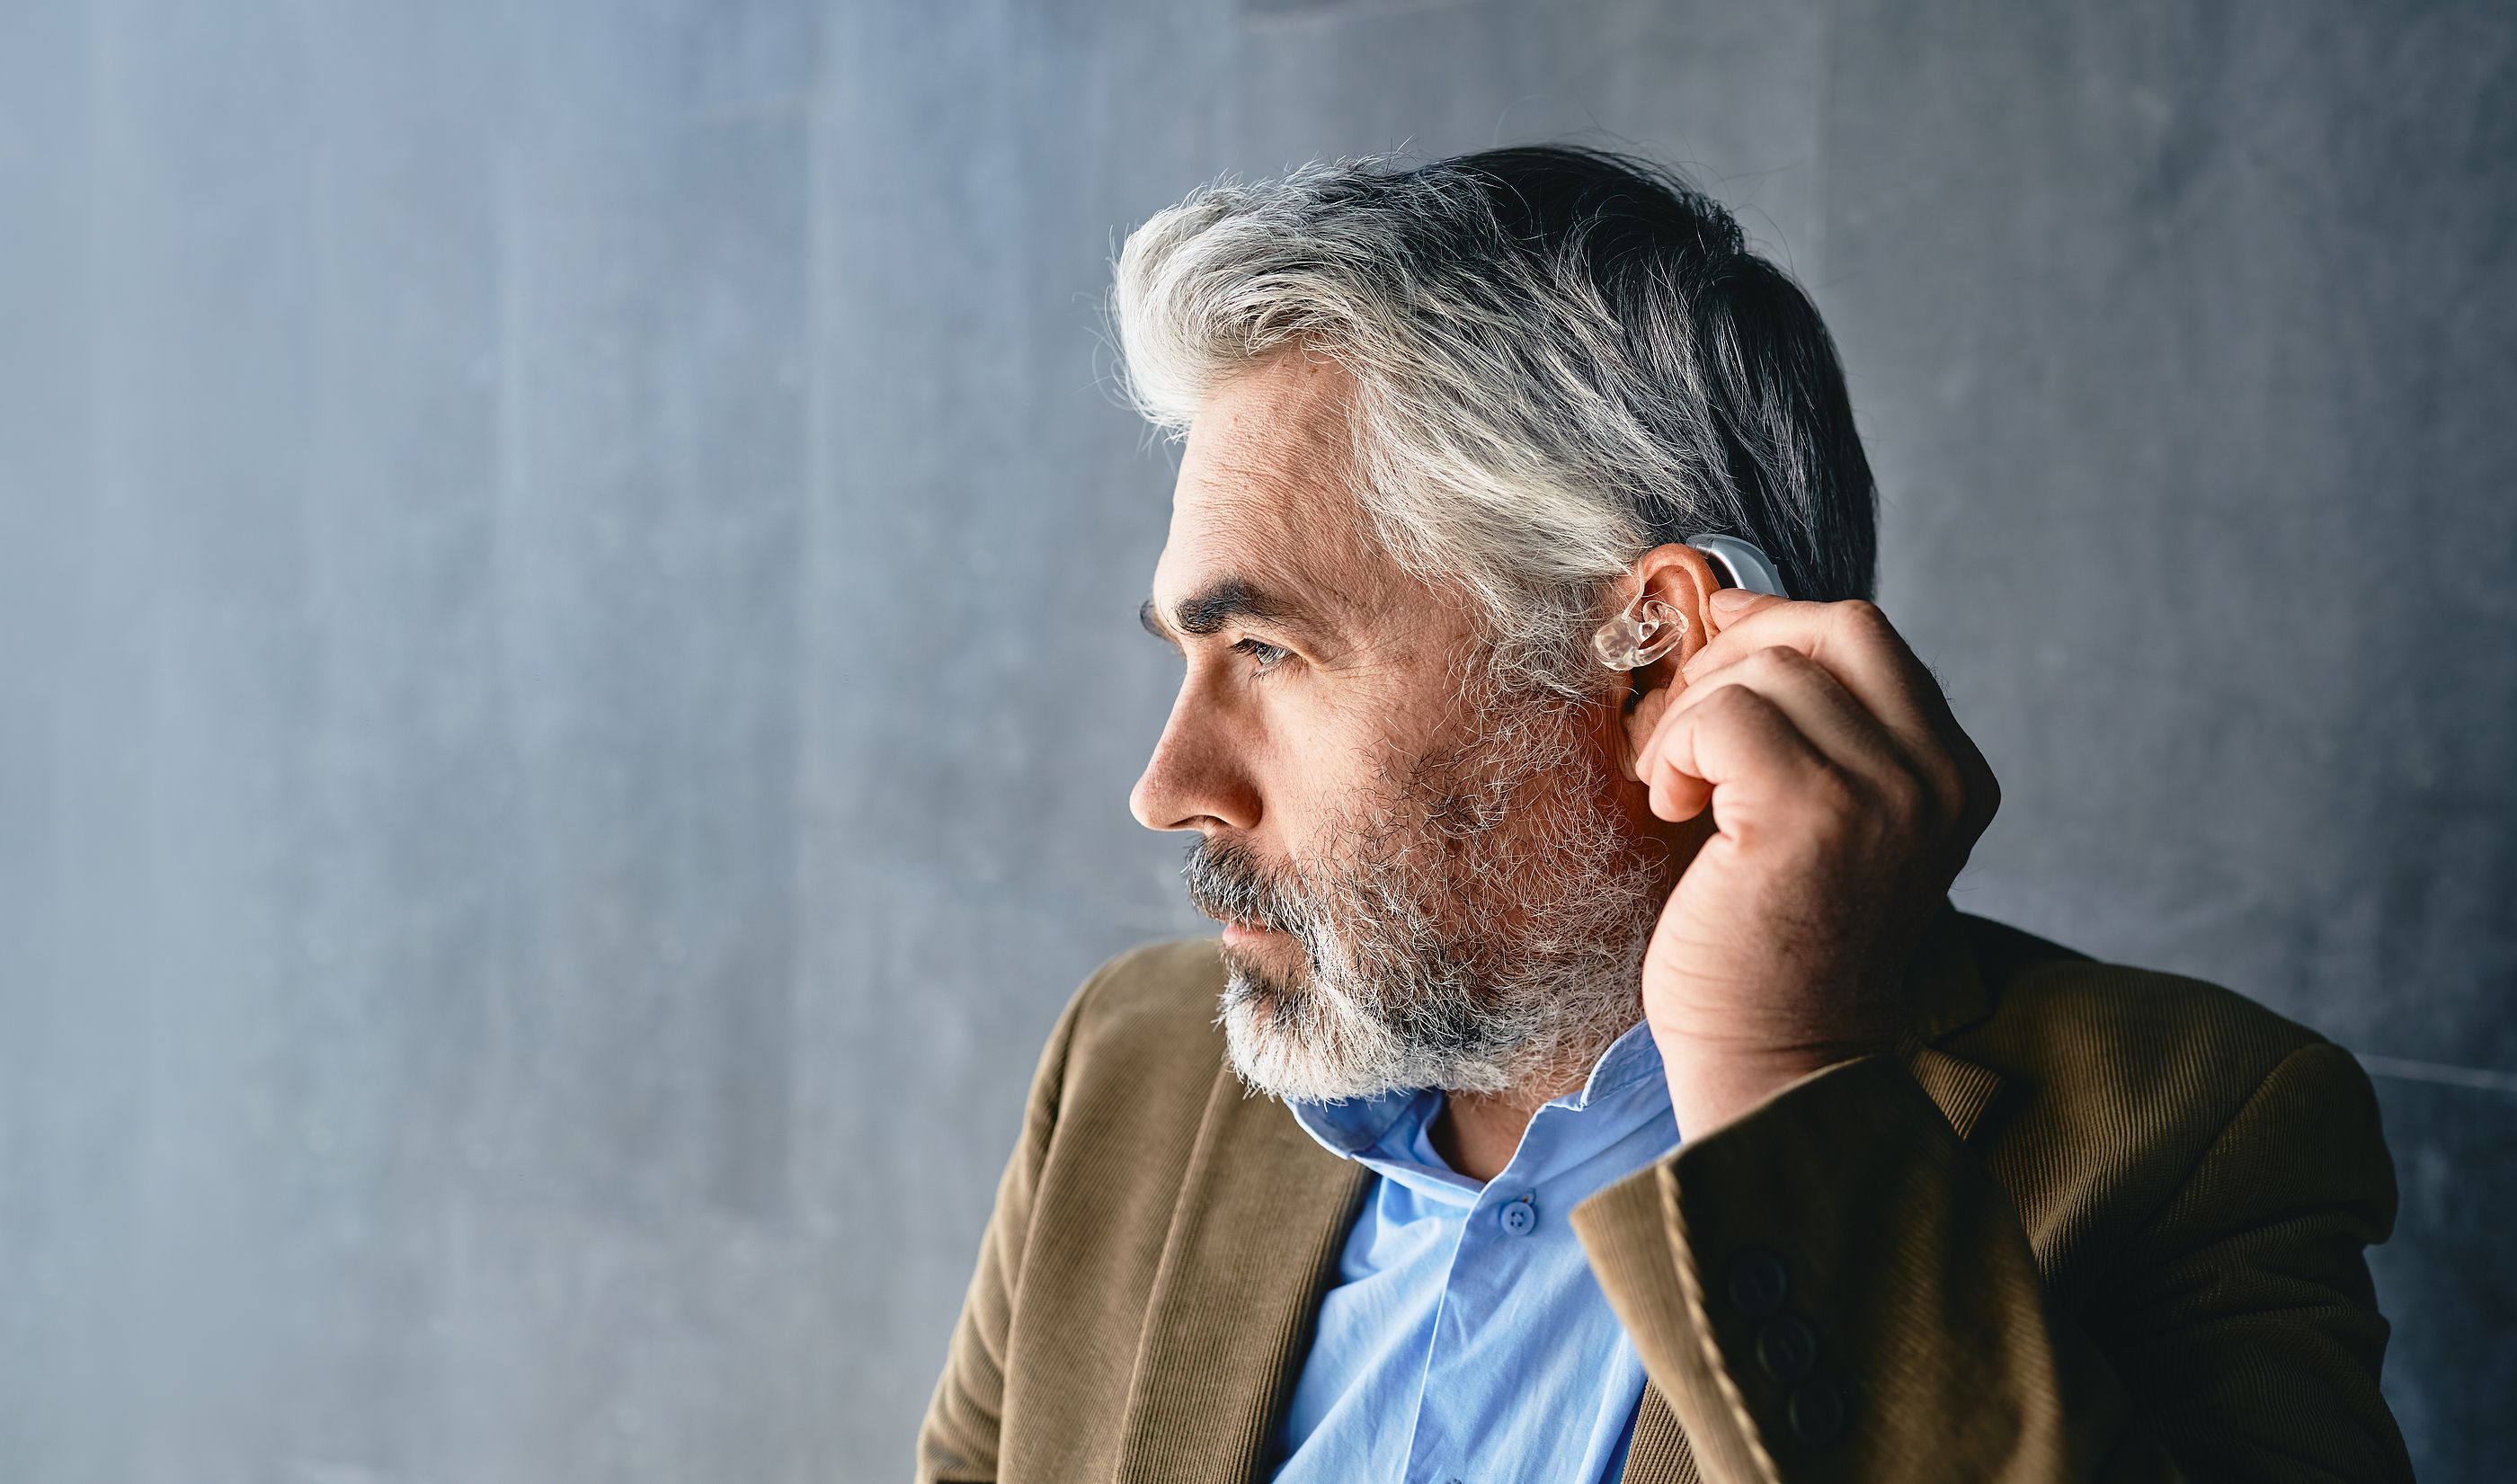 La importancia de prestar atención a la pérdida auditiva: "Puede desarrollar problemas cognitivos"